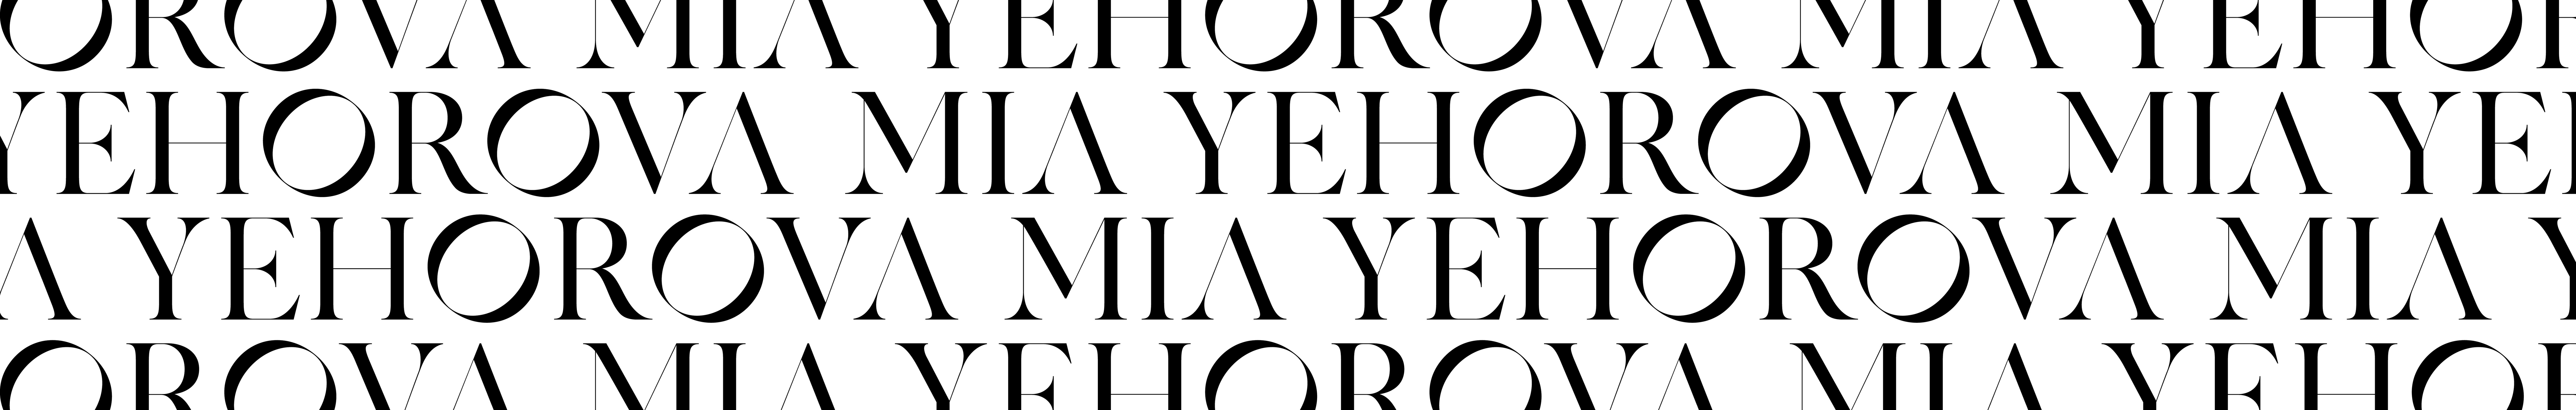 Mia Yehorova's profile banner